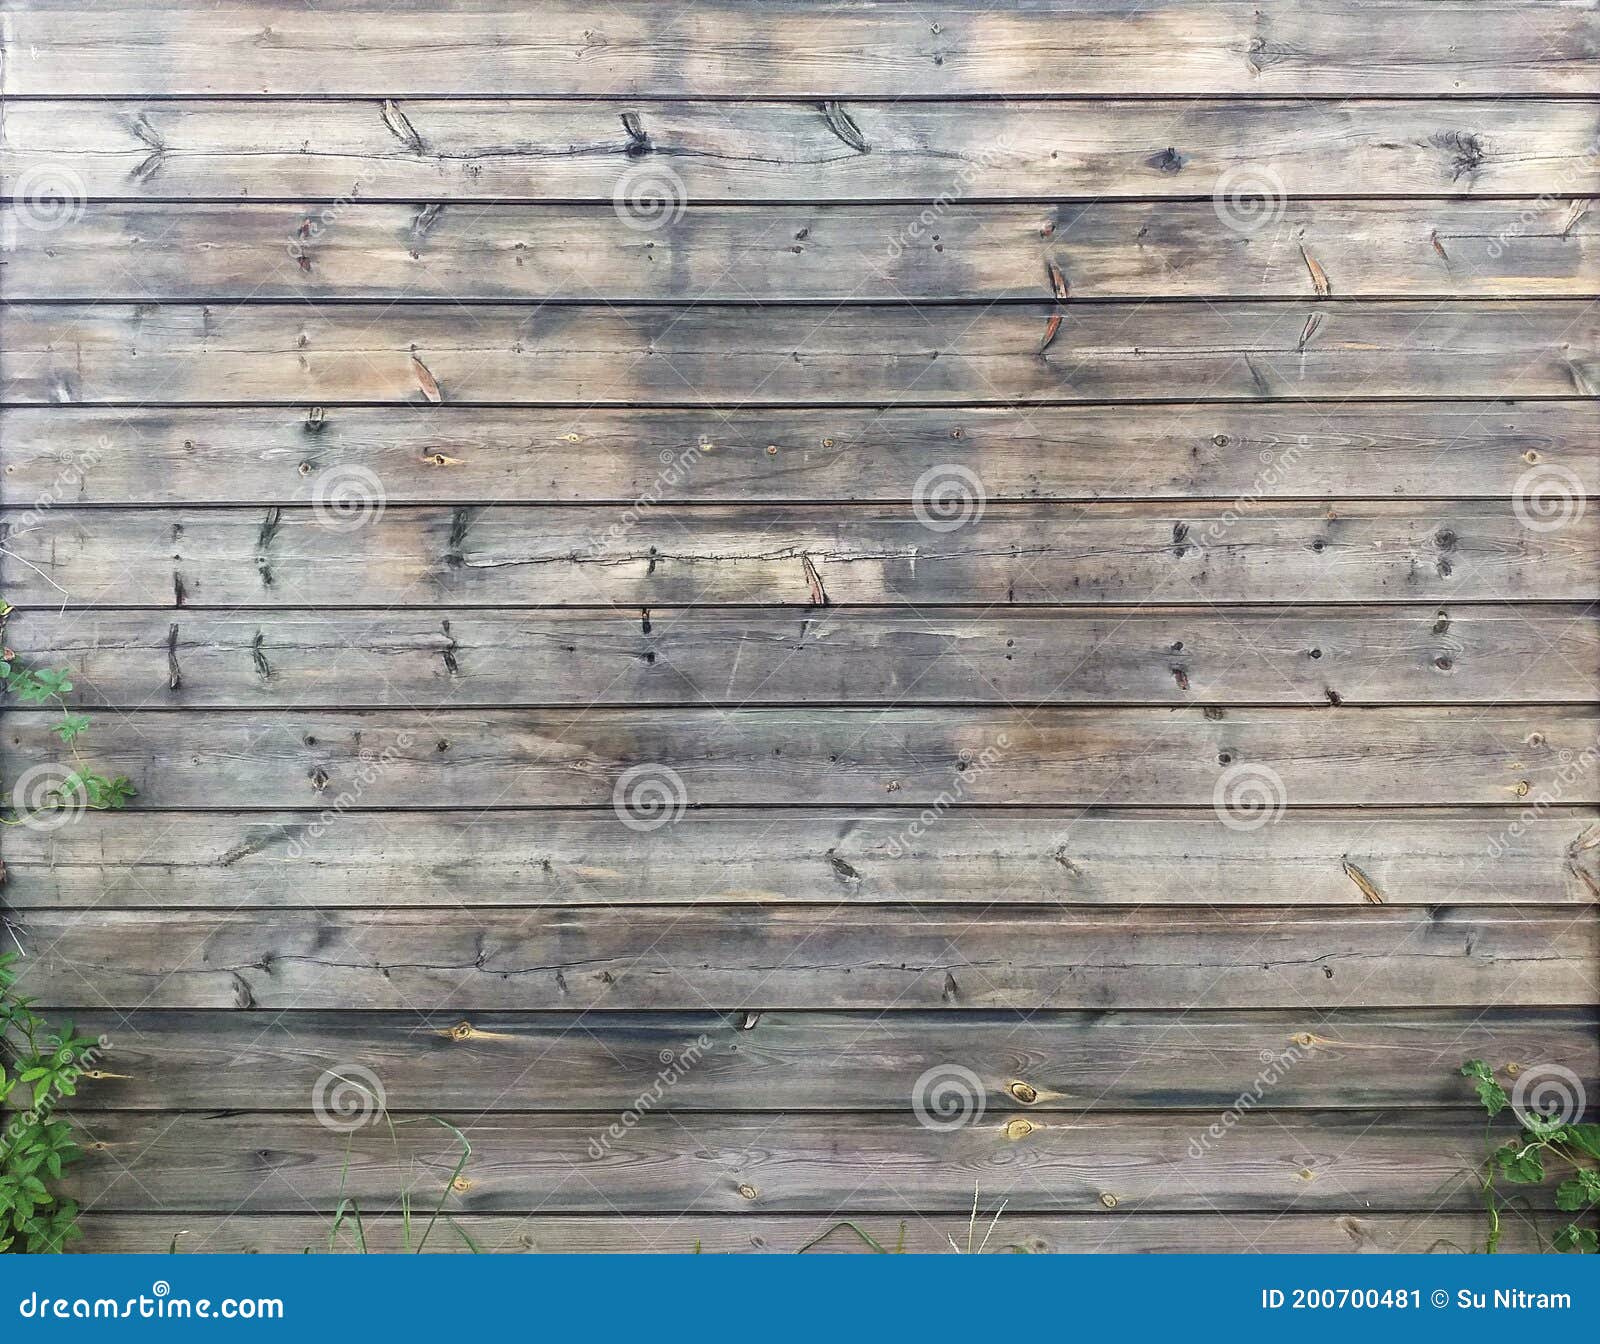 Hình nền gỗ với những thanh gỗ uốn lượn sẽ làm bối cảnh hoàn hảo cho bất kỳ thiết kế hiện đại nào. Nhìn vào hình ảnh này, bạn sẽ cảm nhận được sự ấm áp của gỗ tự nhiên, tạo nên một không gian thân thiện và gần gũi nhưng vẫn rất độc đáo.